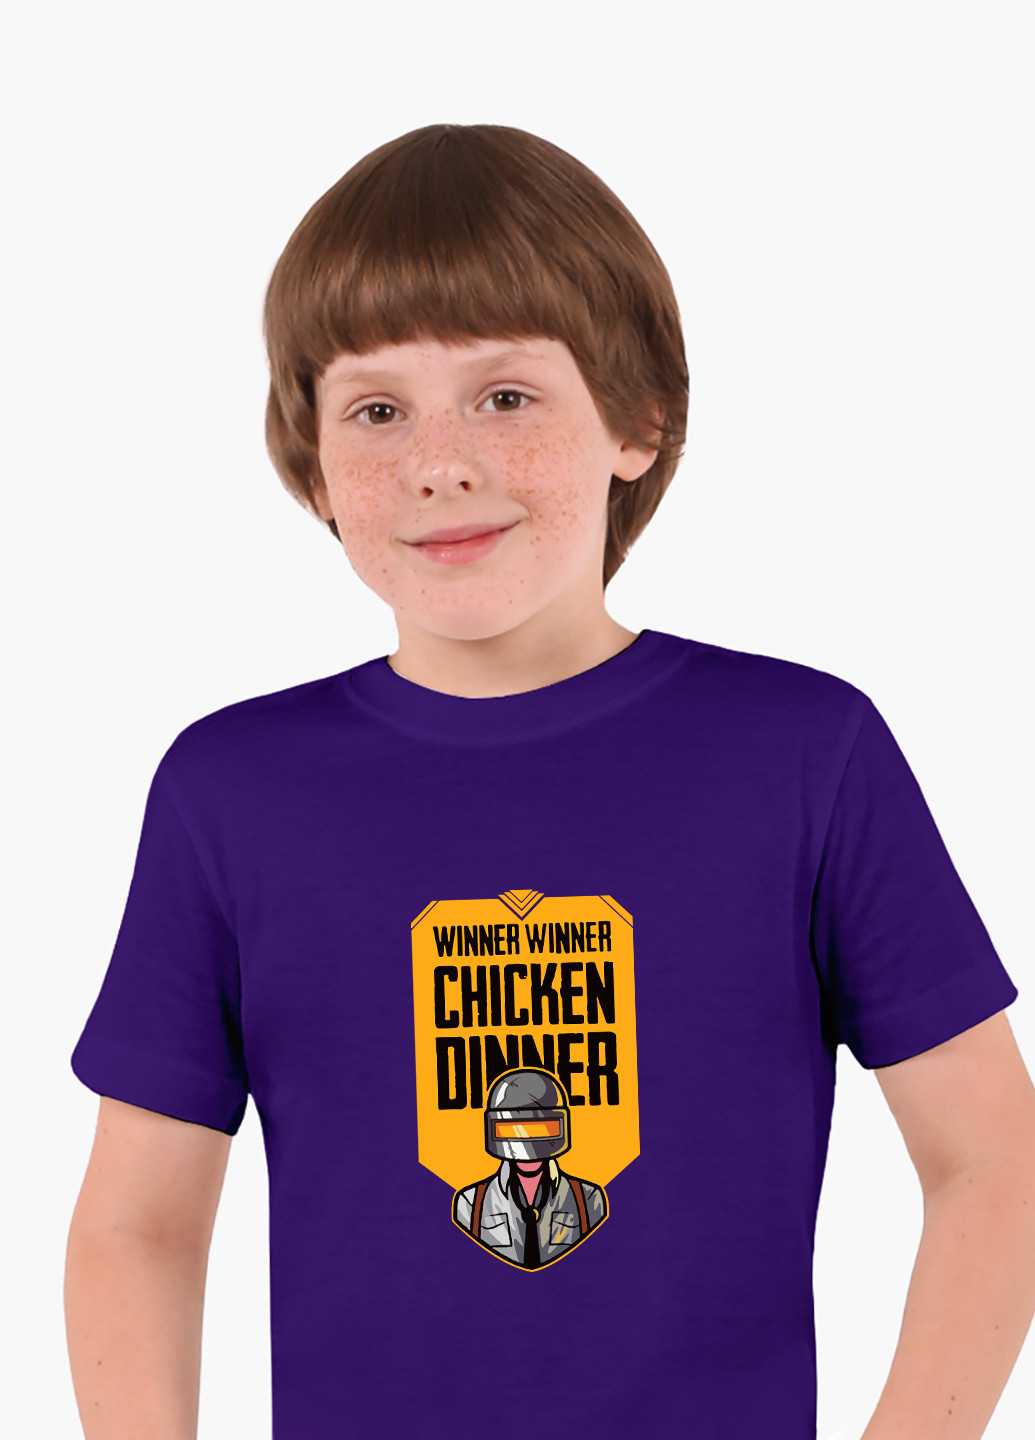 Фиолетовая демисезонная футболка детская пубг пабг (pubg)(9224-1182) MobiPrint